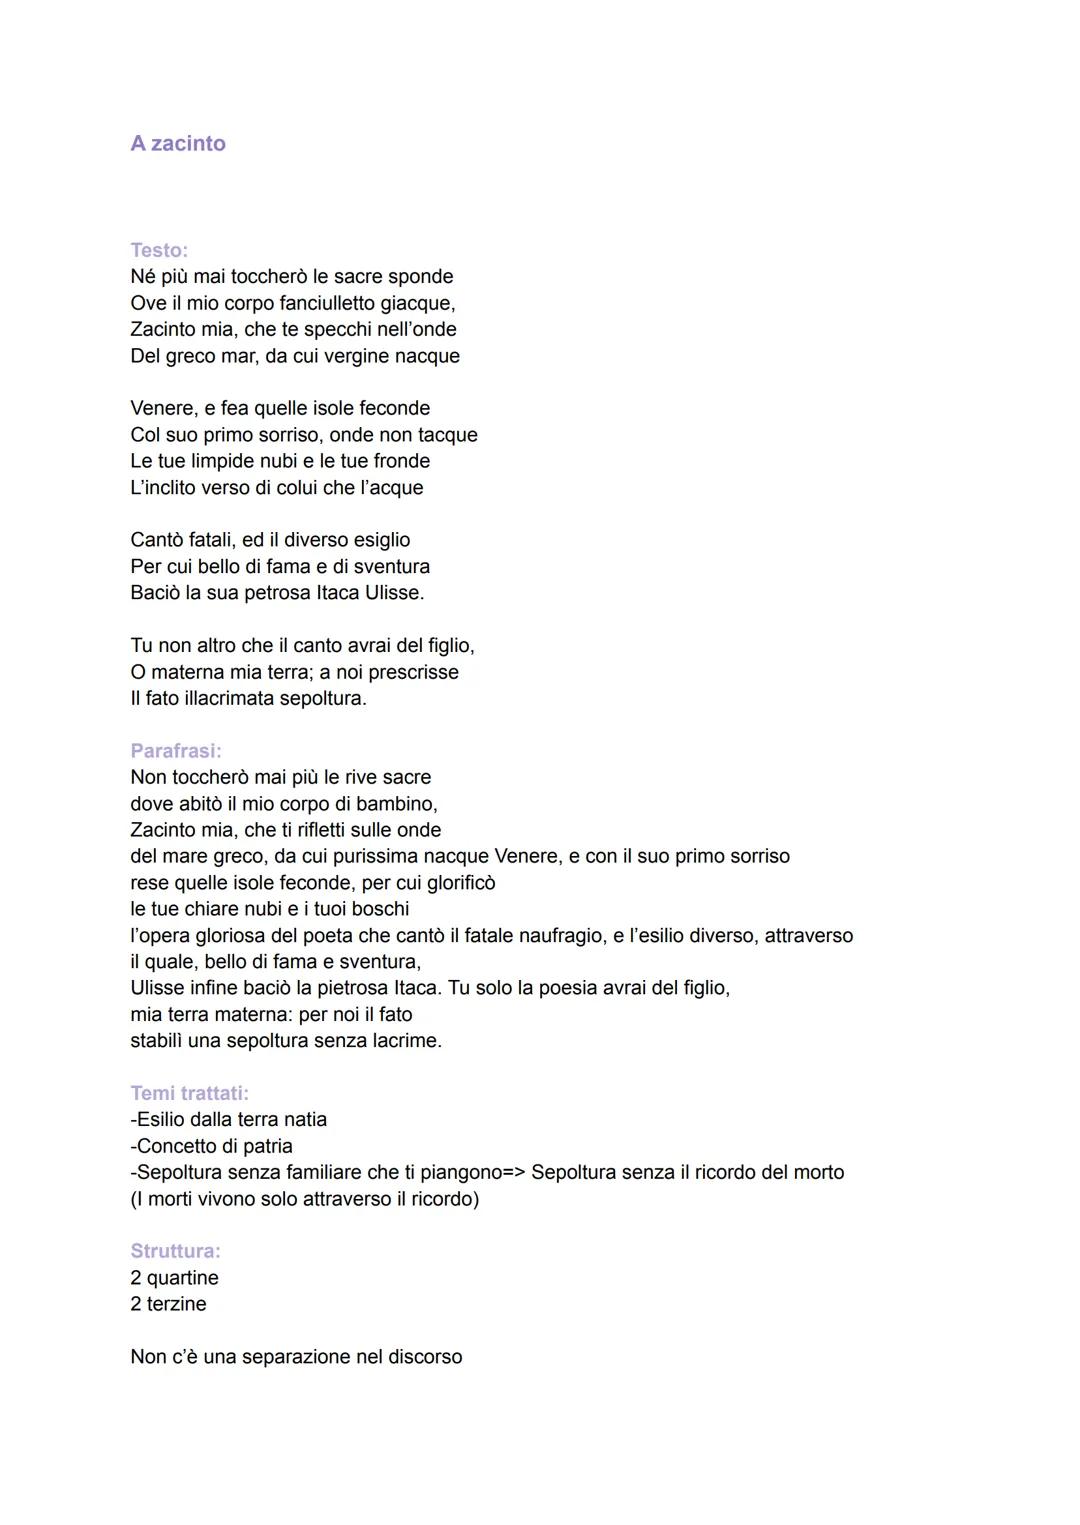 
<p>Il testo "A Zacinto" è una poesia scritta da Ugo Foscolo. Essa esprime il dolore e la malinconia del poeta nei confronti della sua terra